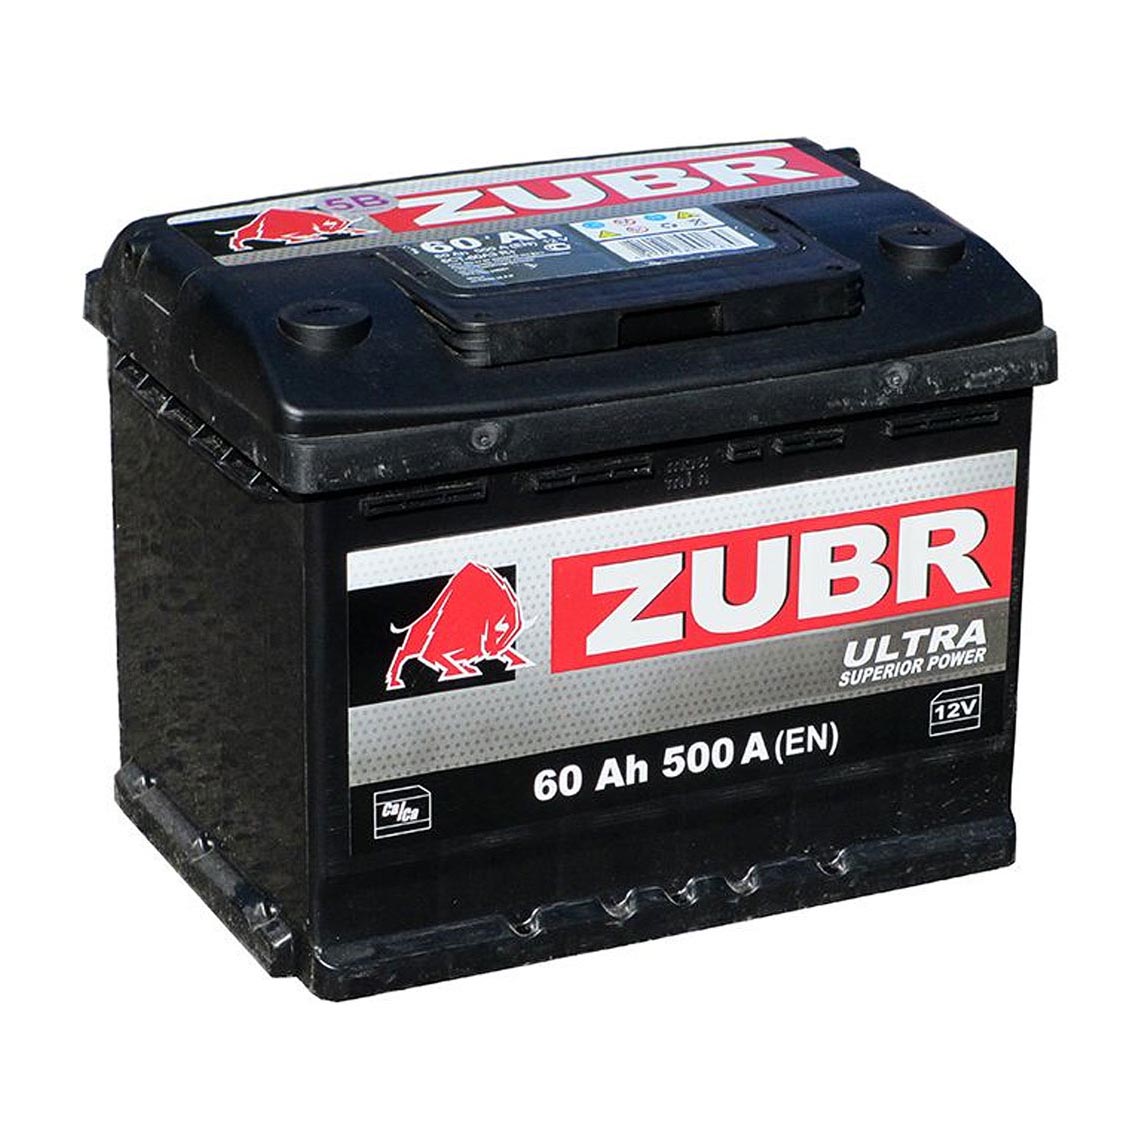 Авто аккумулятор недорого. Zubr Ultra 60ah. Zubr Premium 80 Ач. ЗУБР аккумулятор автомобильный. Zubr zu601 60 а.ч. Zubr Ultra пр. пол., 600 a en (242x175x190).